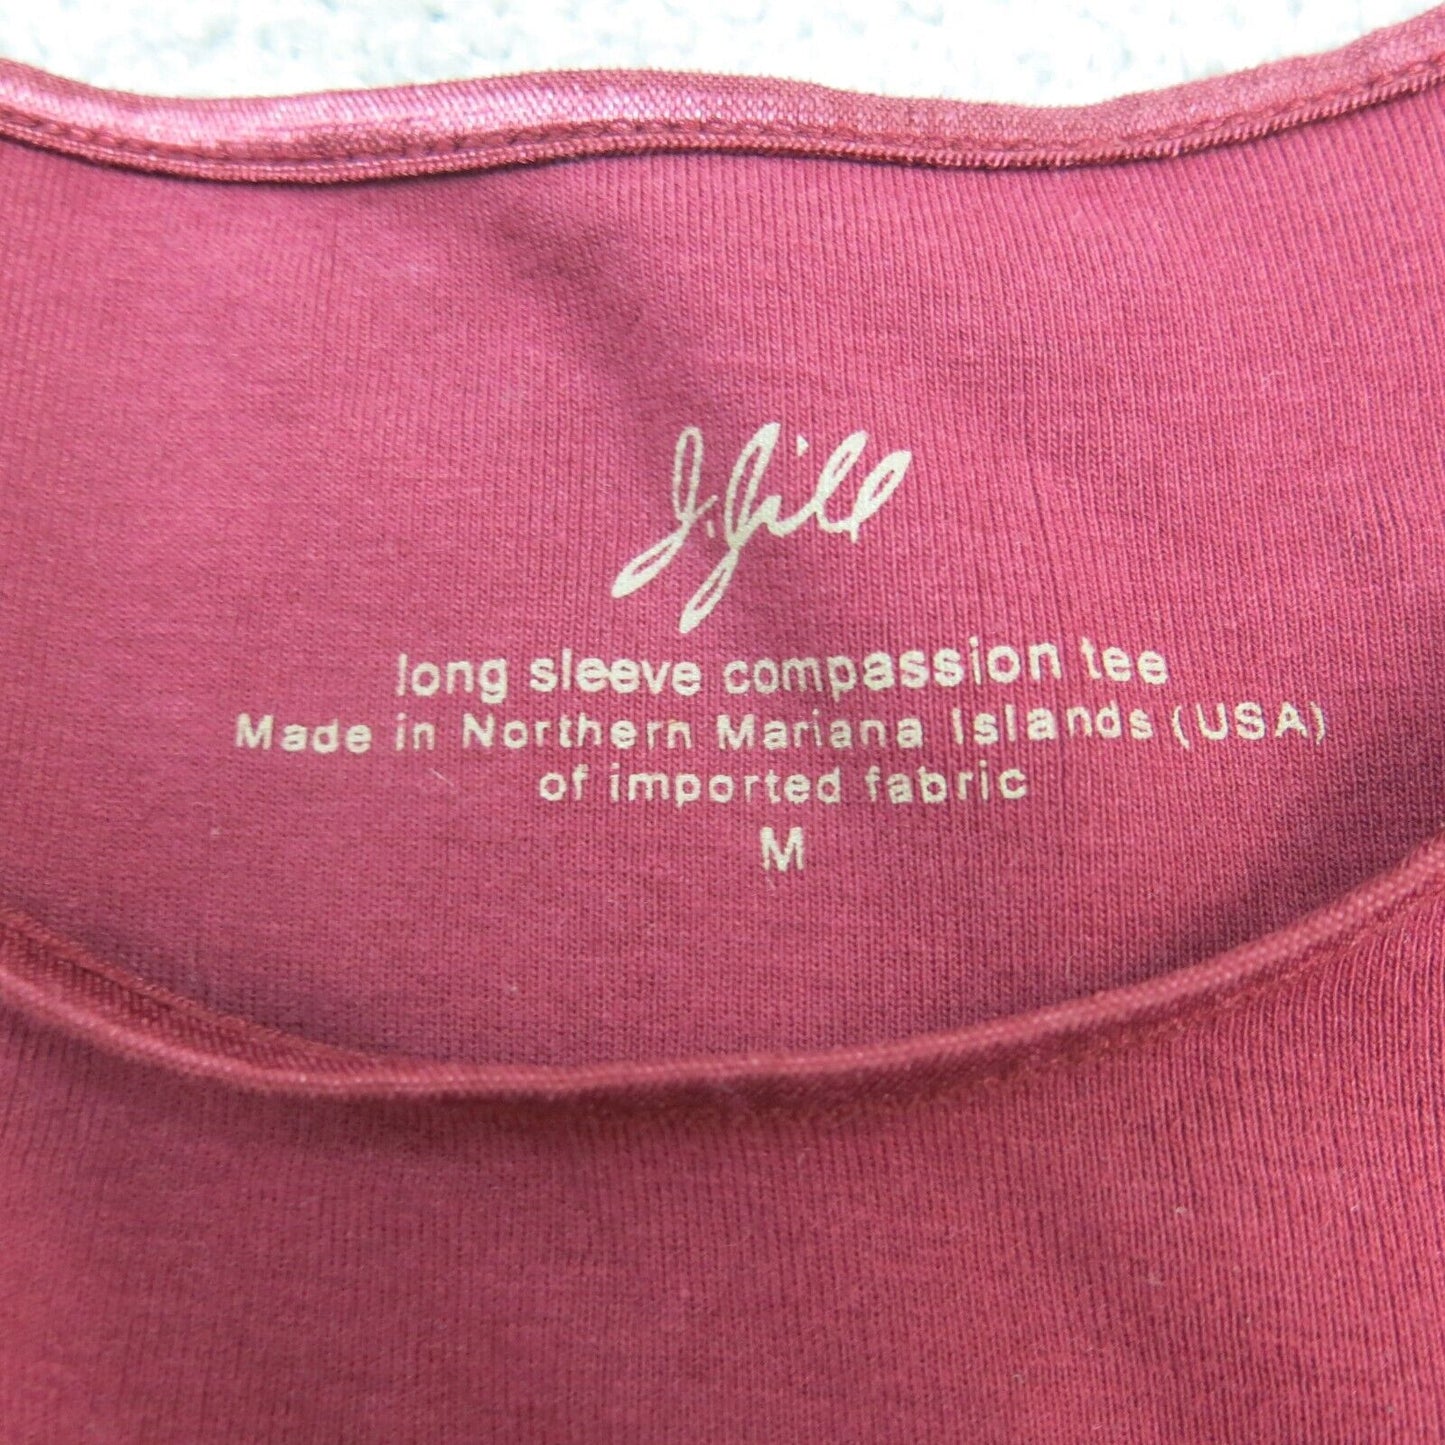 J Jill Shirt Womens Medium Red Crew Neck Long Sleeve Shirt Top Casual Outdoor